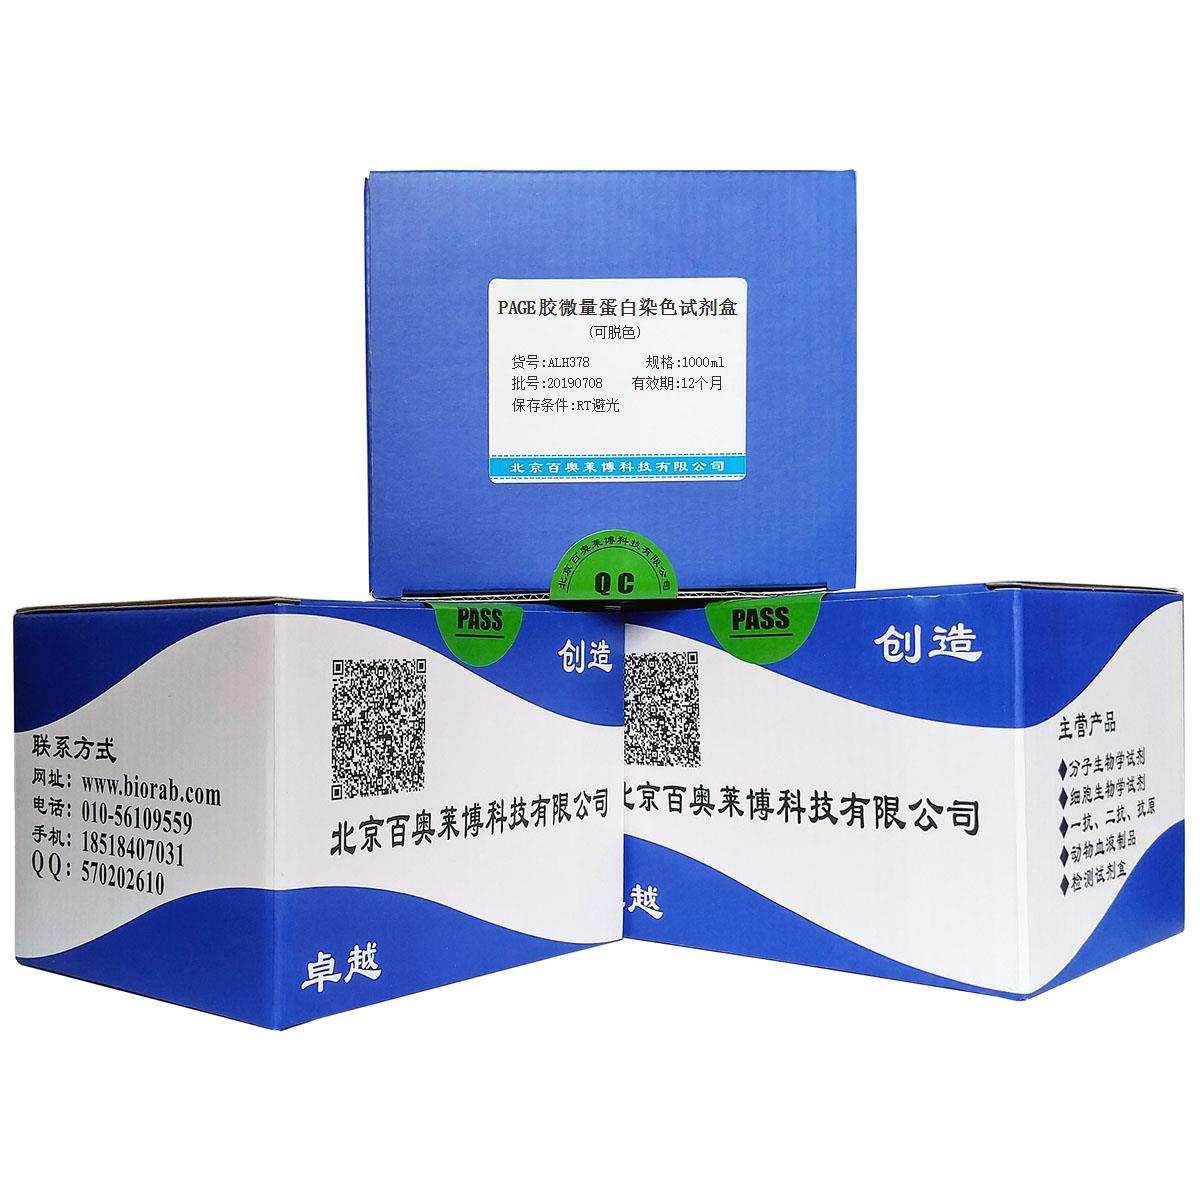 PAGE胶微量蛋白染色试剂盒(可脱色)北京供应商